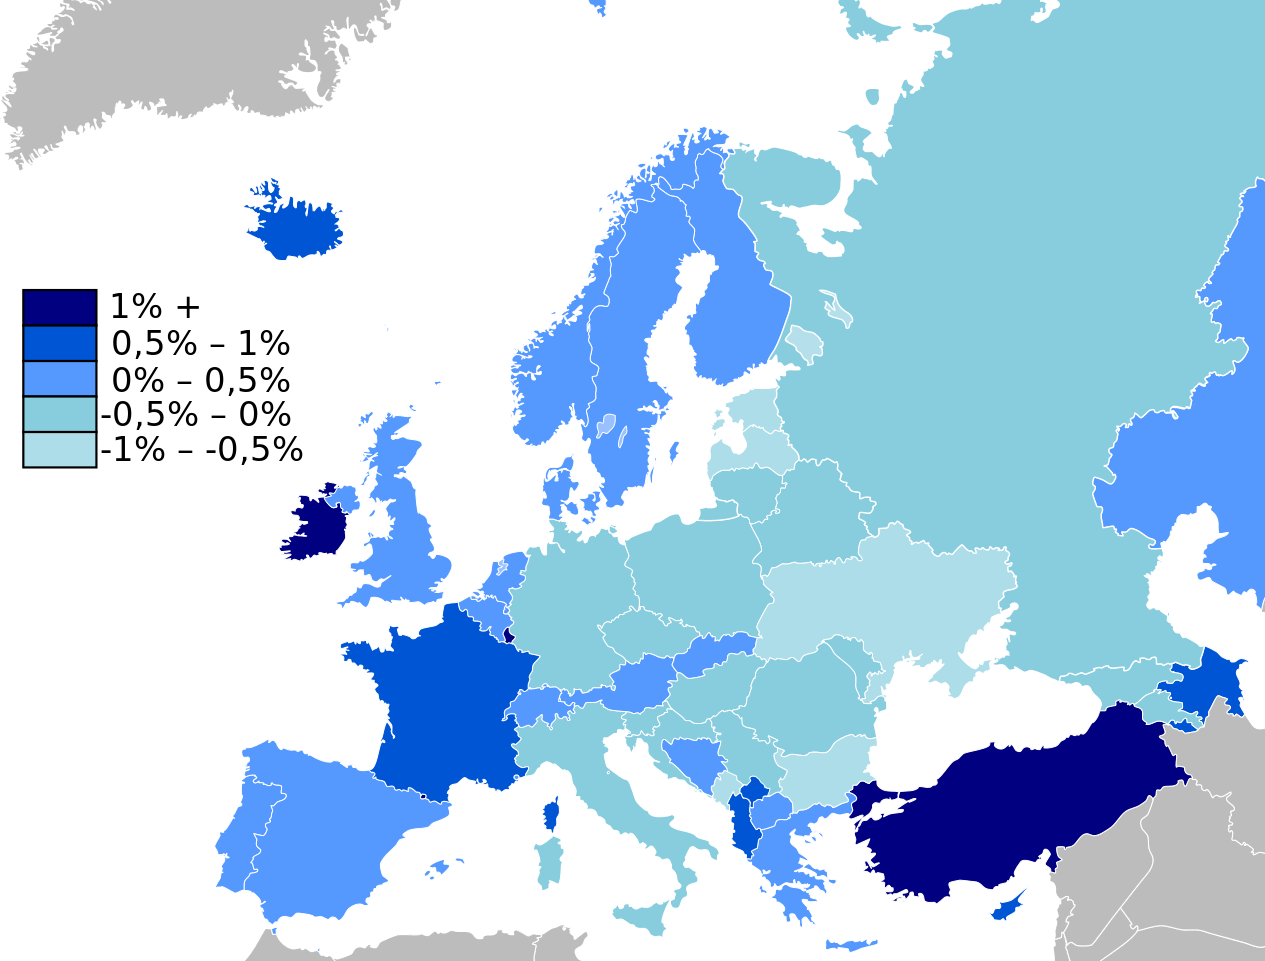 demographie karte von europa